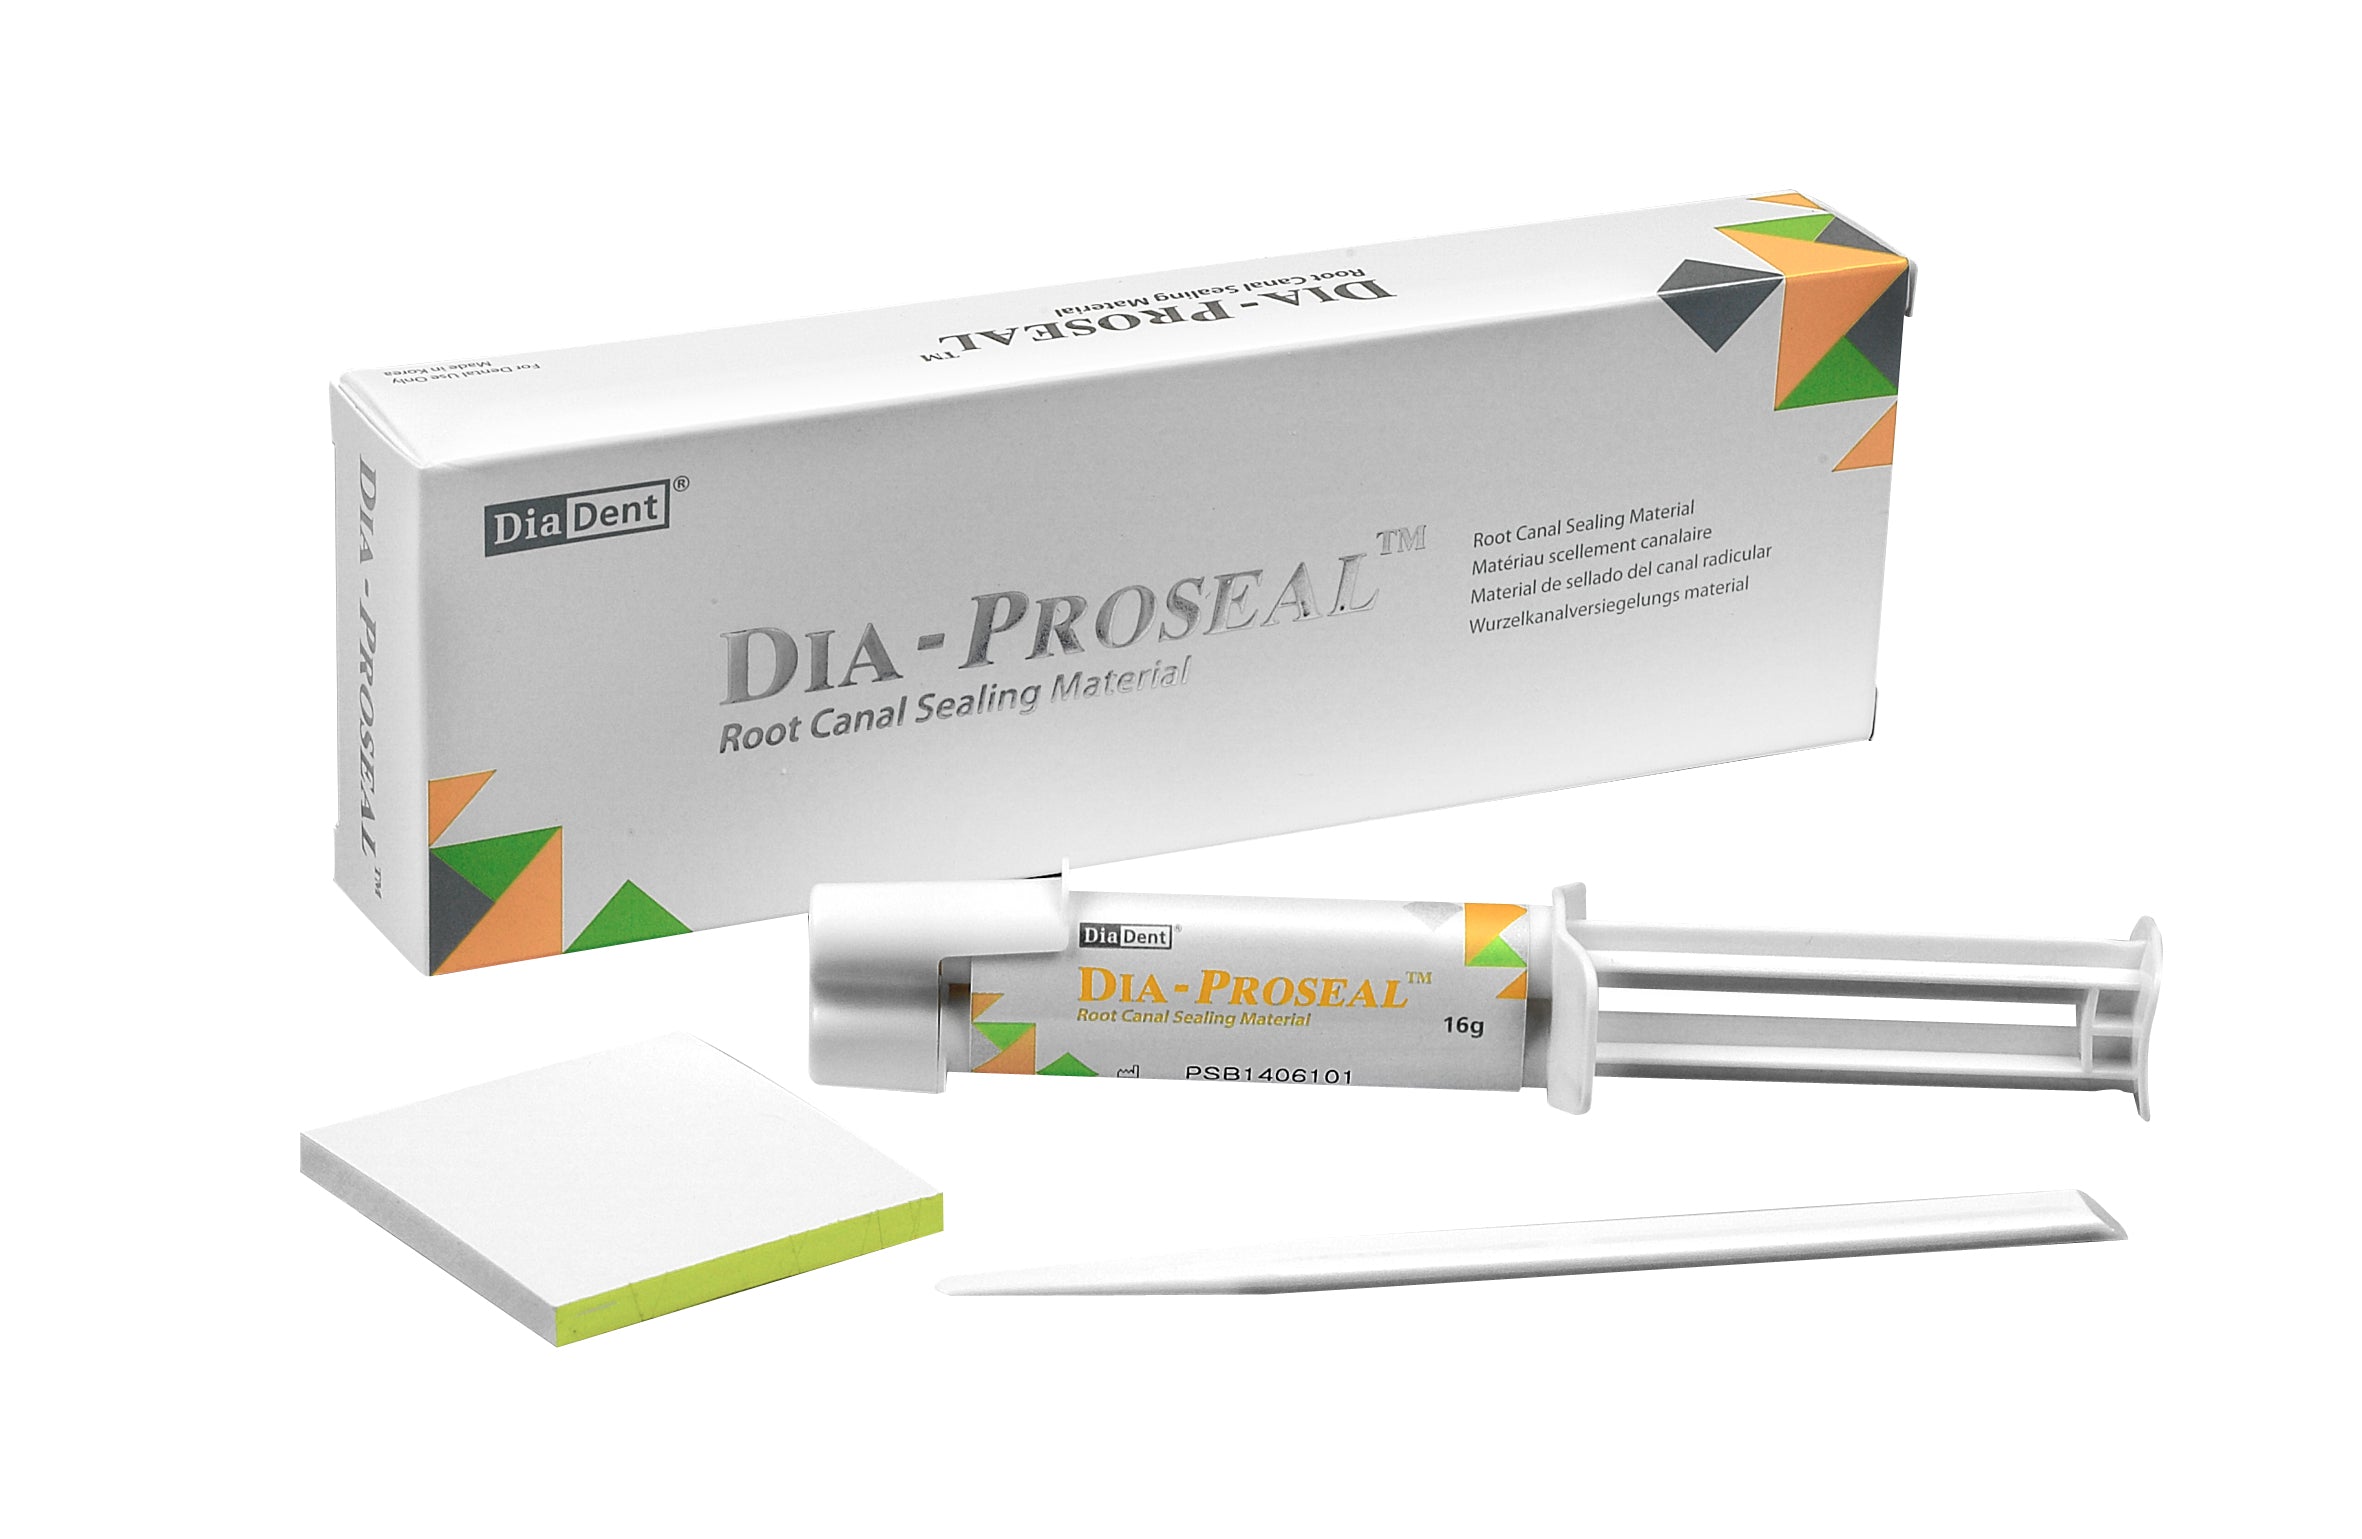 Diadent Dia Proseal Root Canal Sealing Material / Dental Resin-Based Material